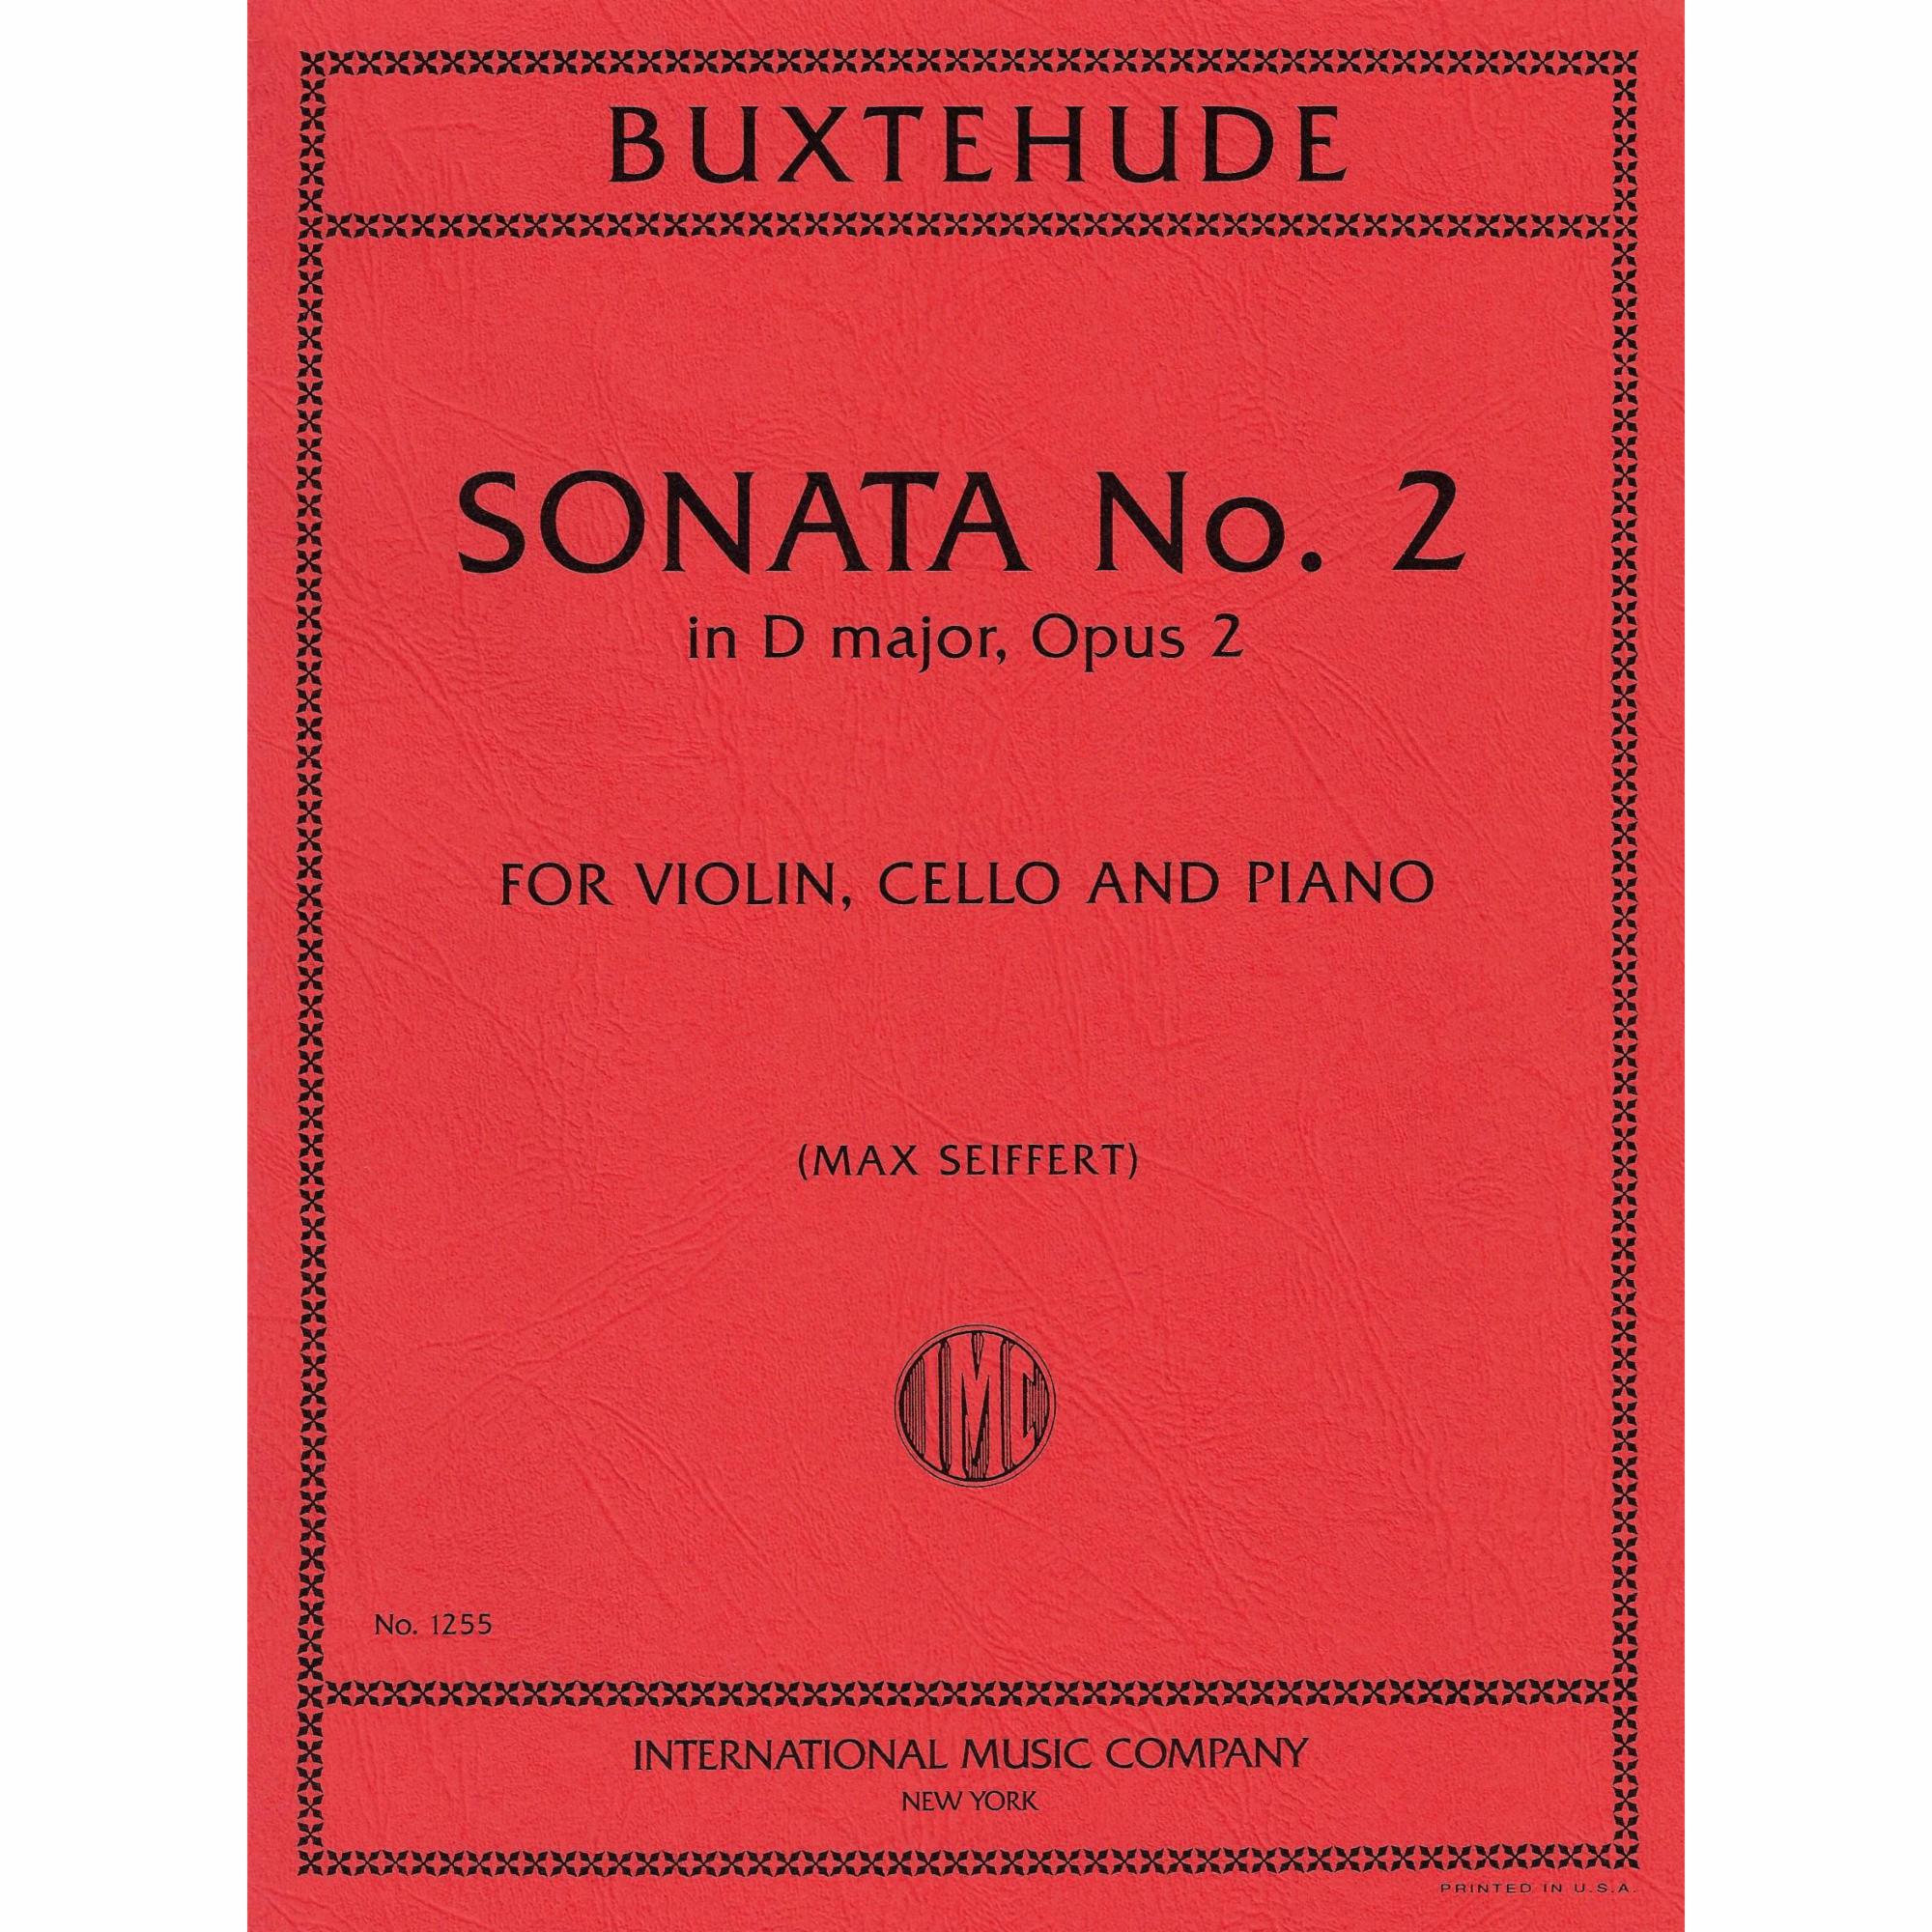 Buxtehude -- Sonata No. 2 in D Major, Op. 2 for Piano Trio